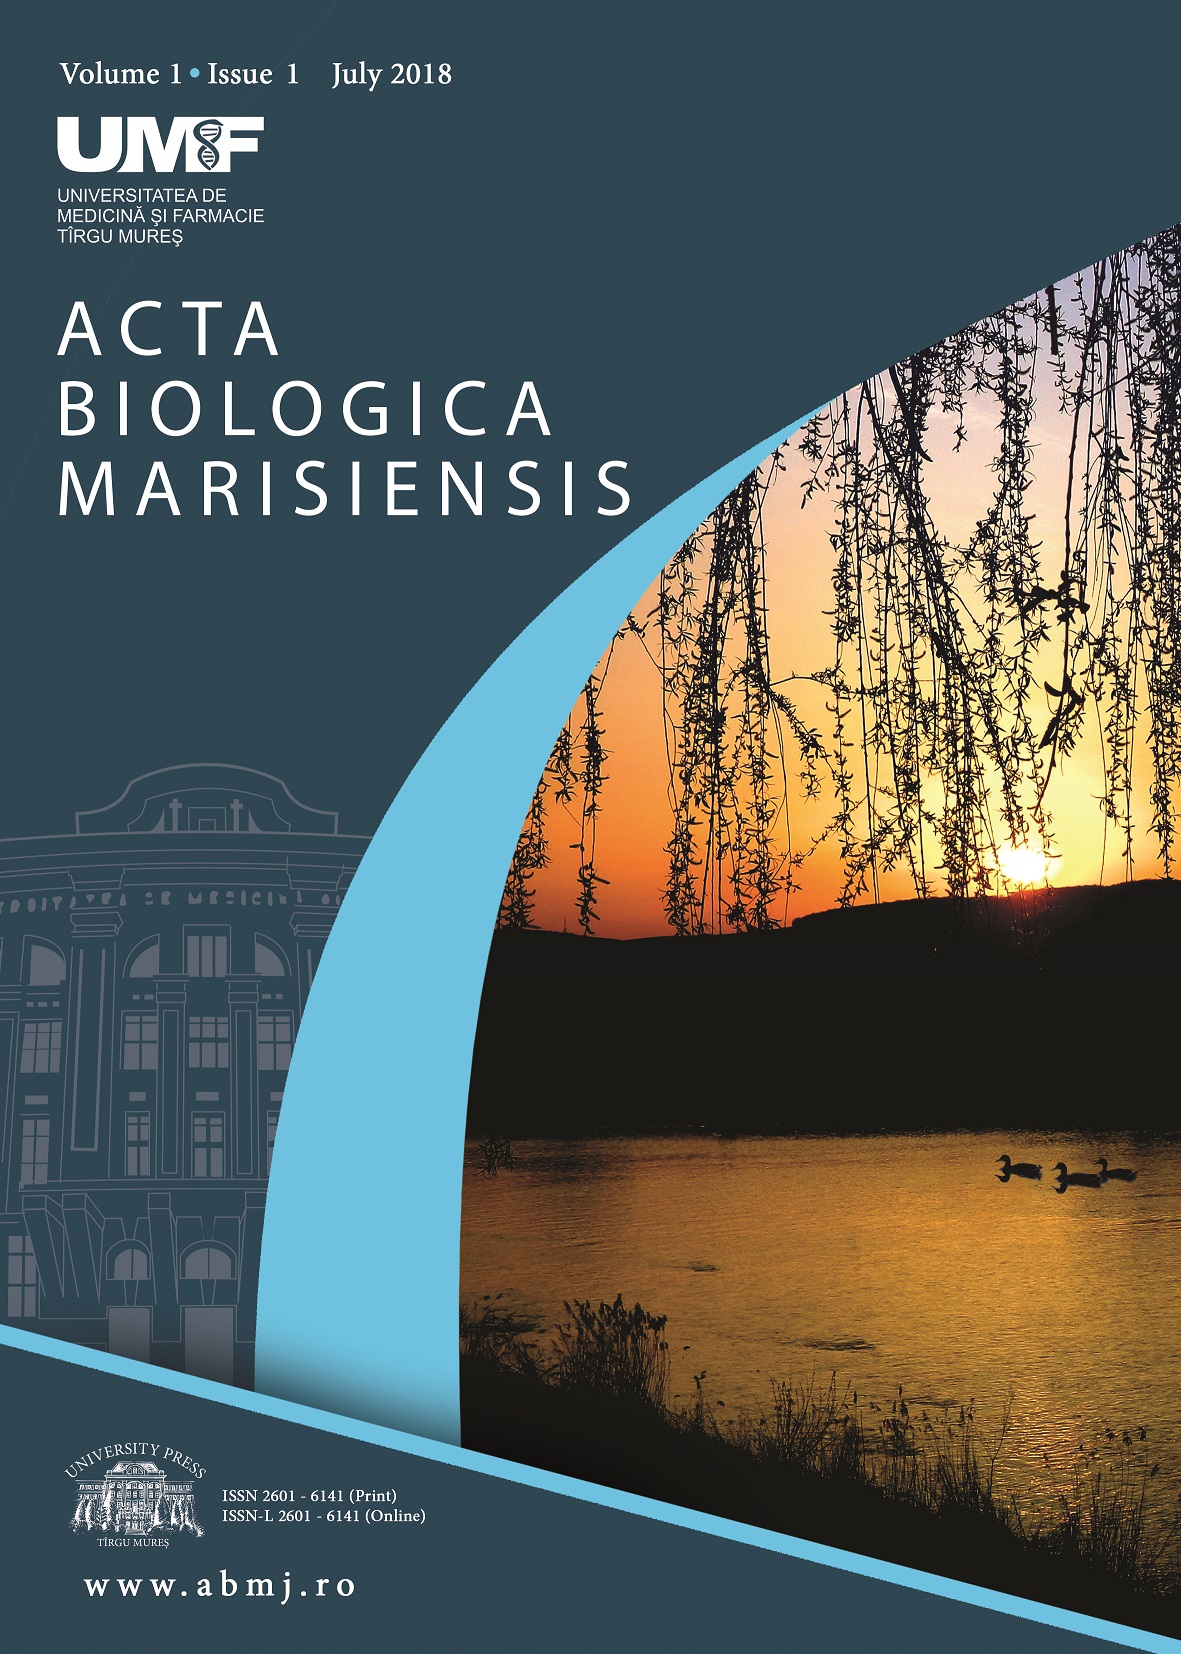 UMF Tîrgu Mureș anunță lansarea revistei Acta Biologica Marisiensis